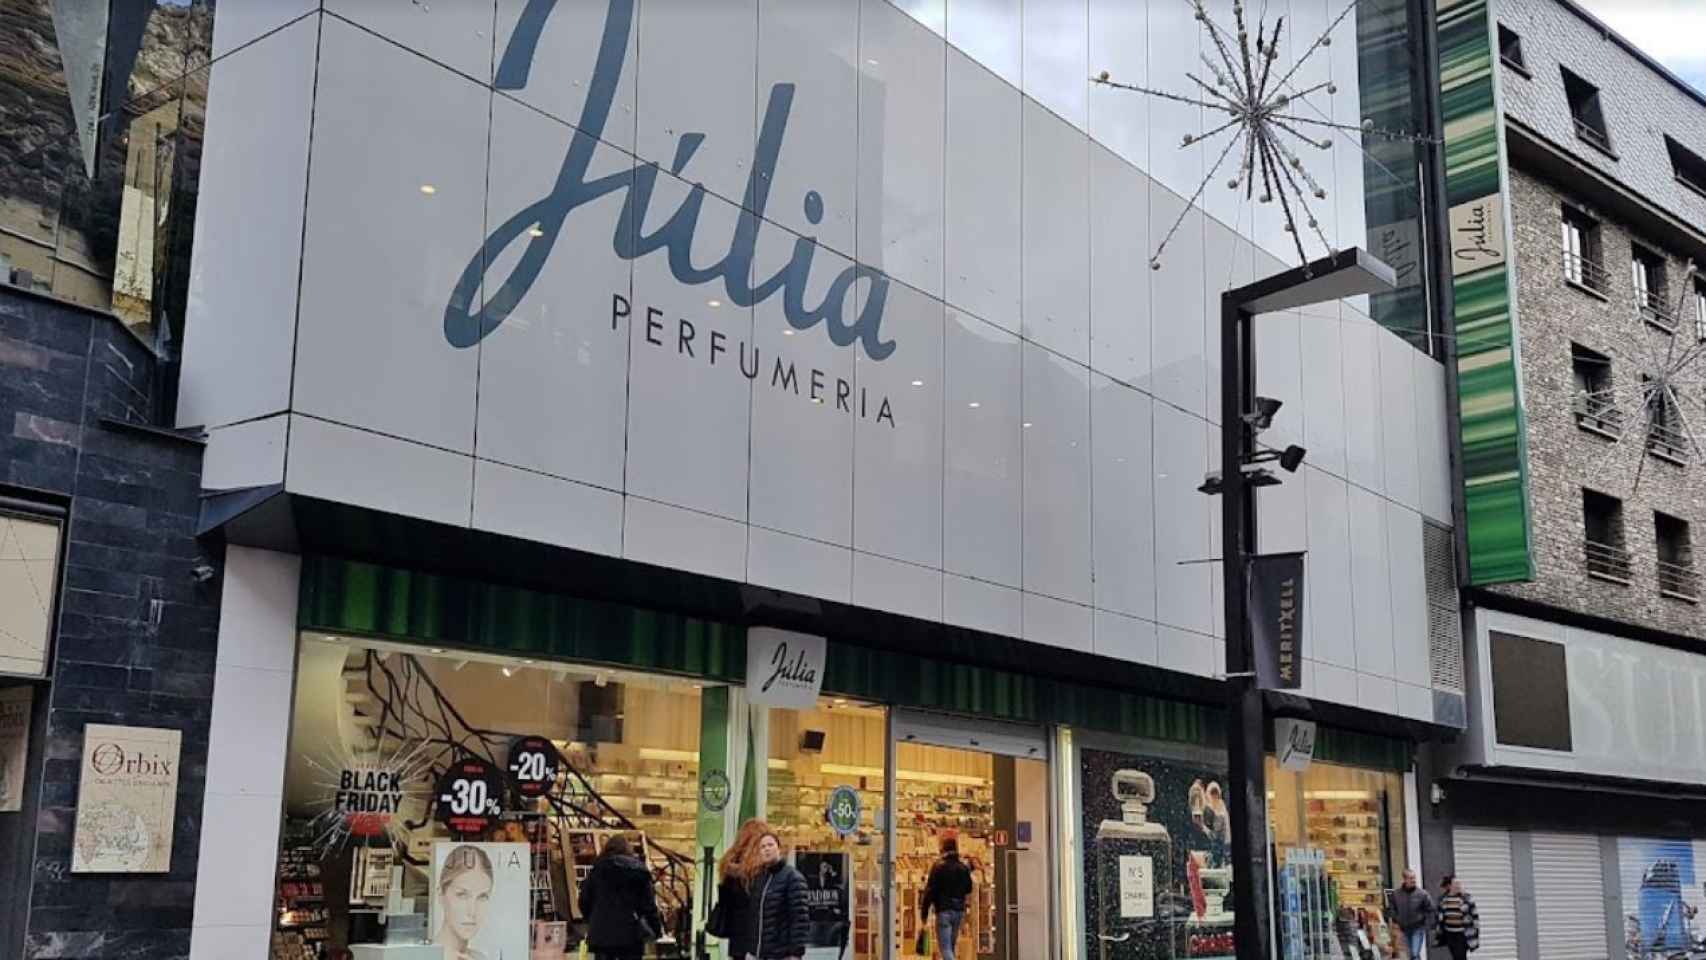 Die Parfümeure Júlia erklärten, sie sei vor einem Jahr verstorben